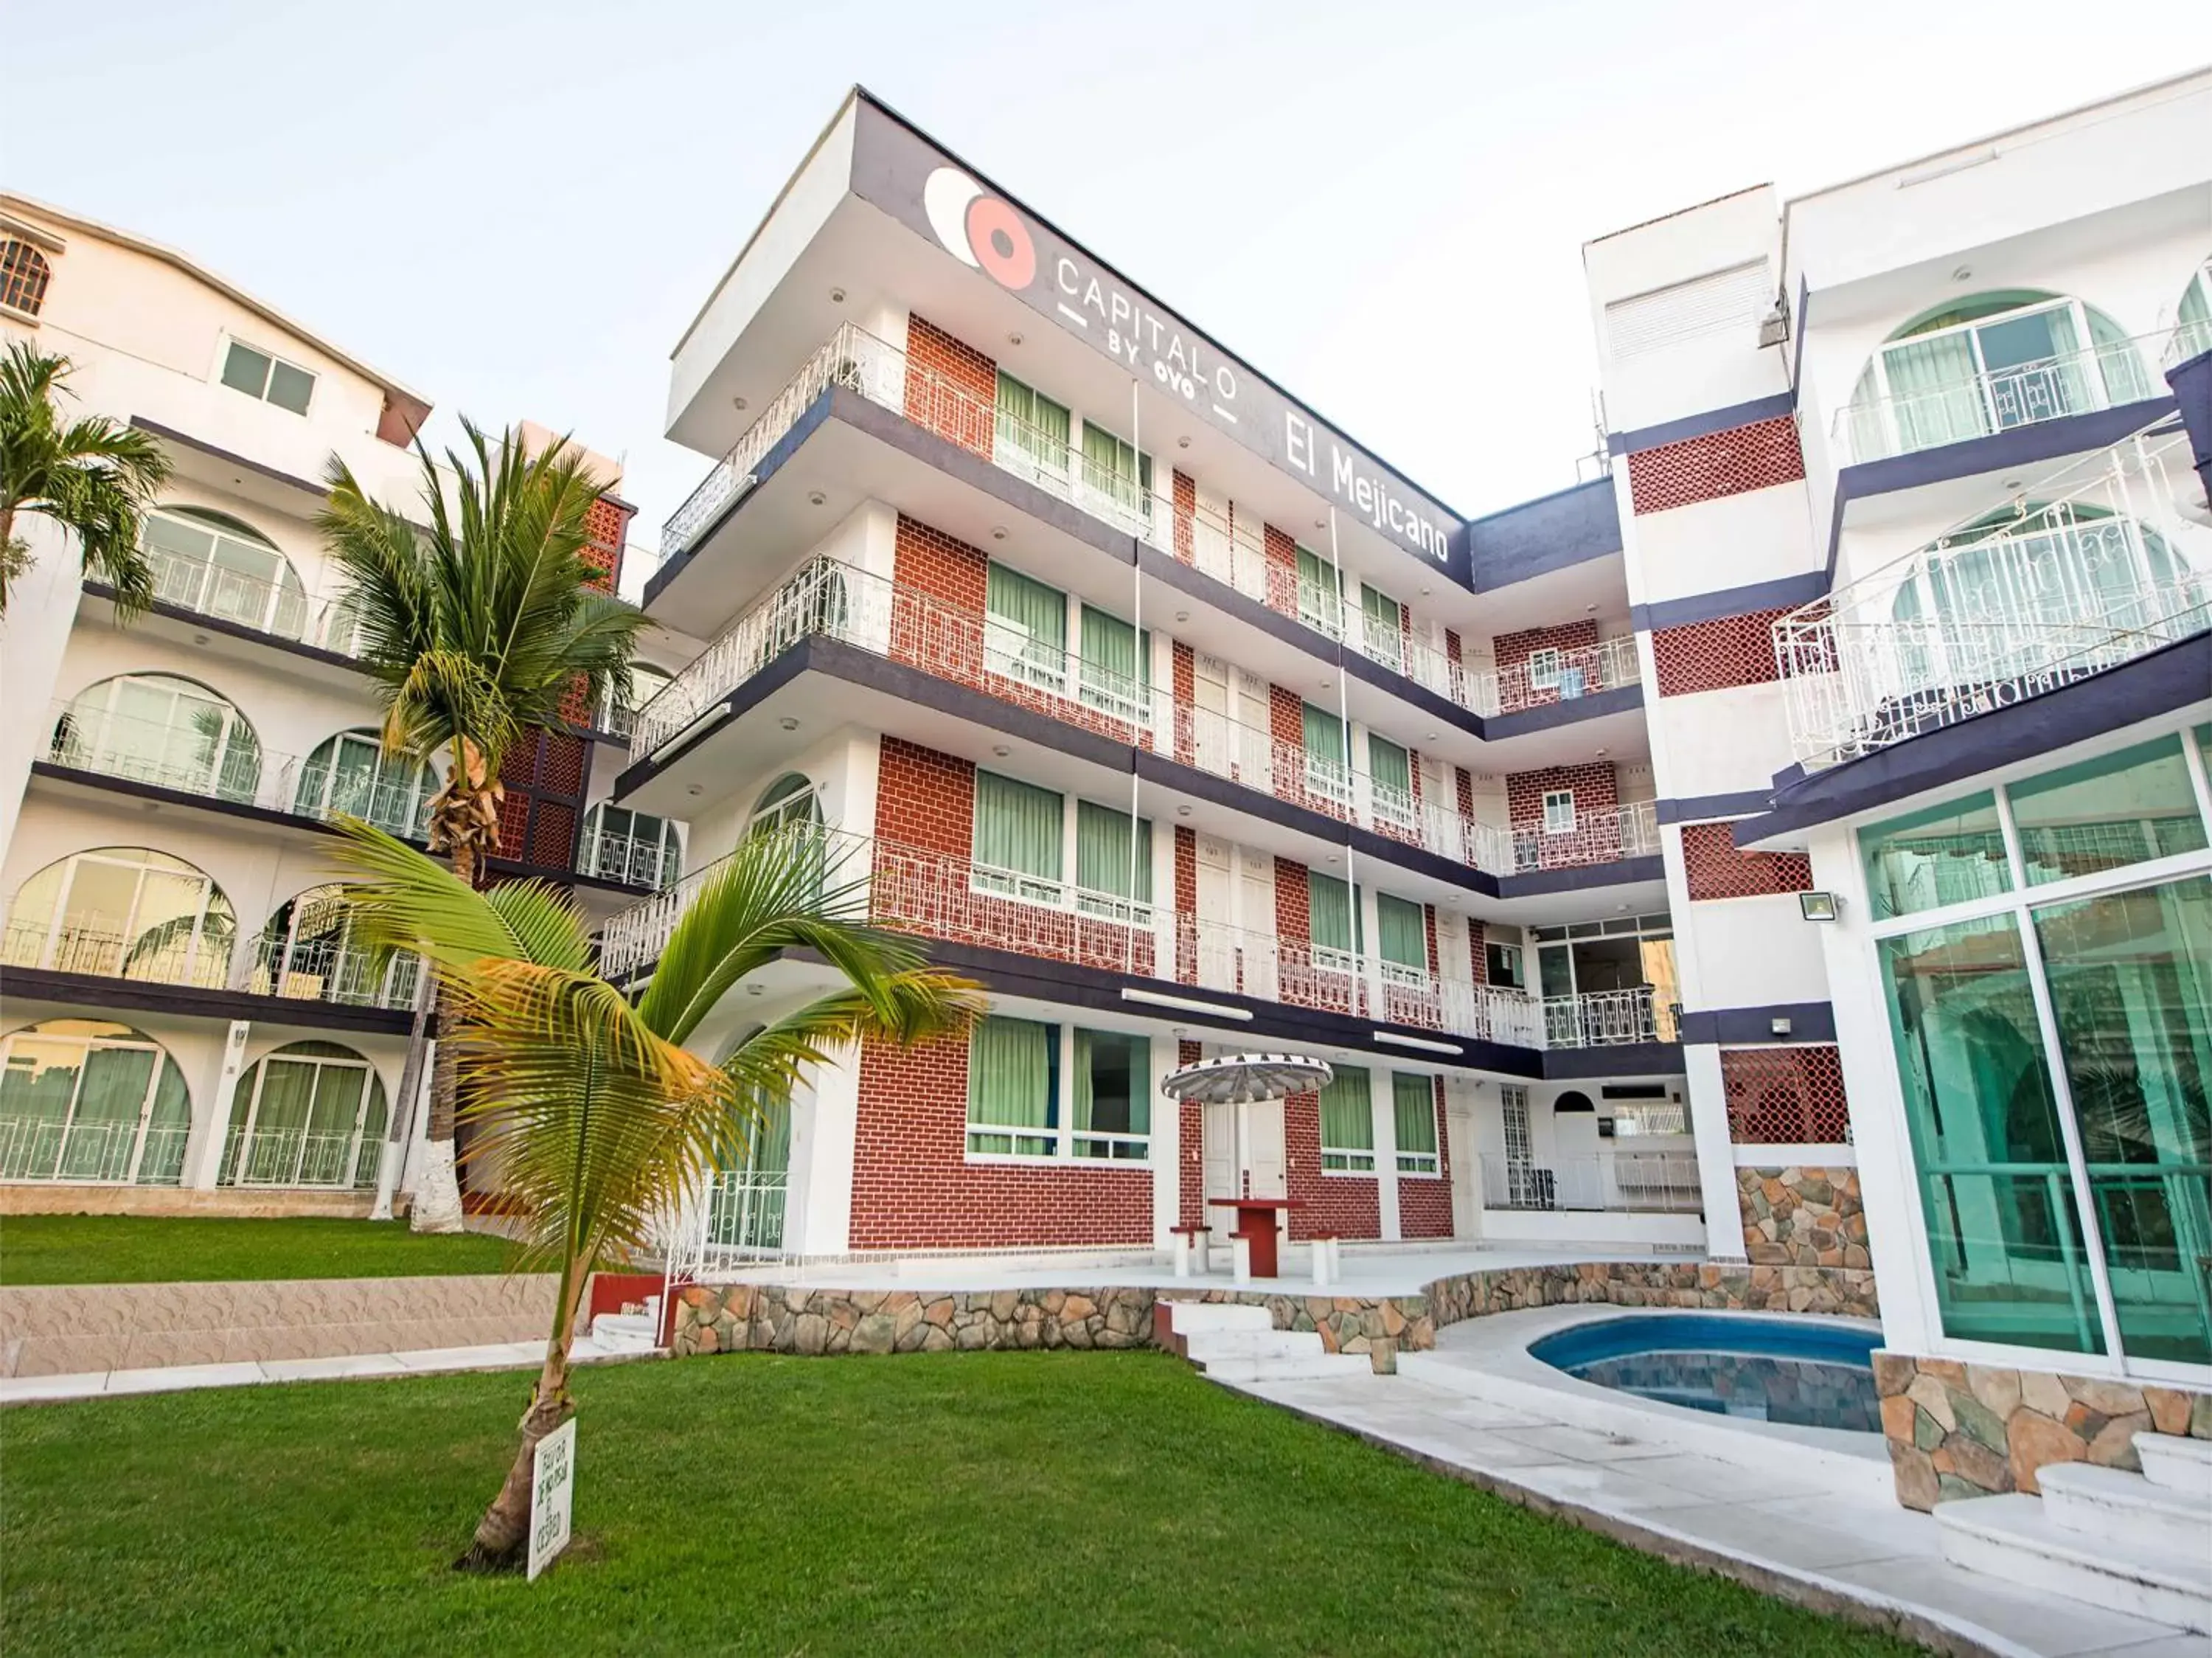 Property building in Capital O Hotel El Mejicano, Acapulco